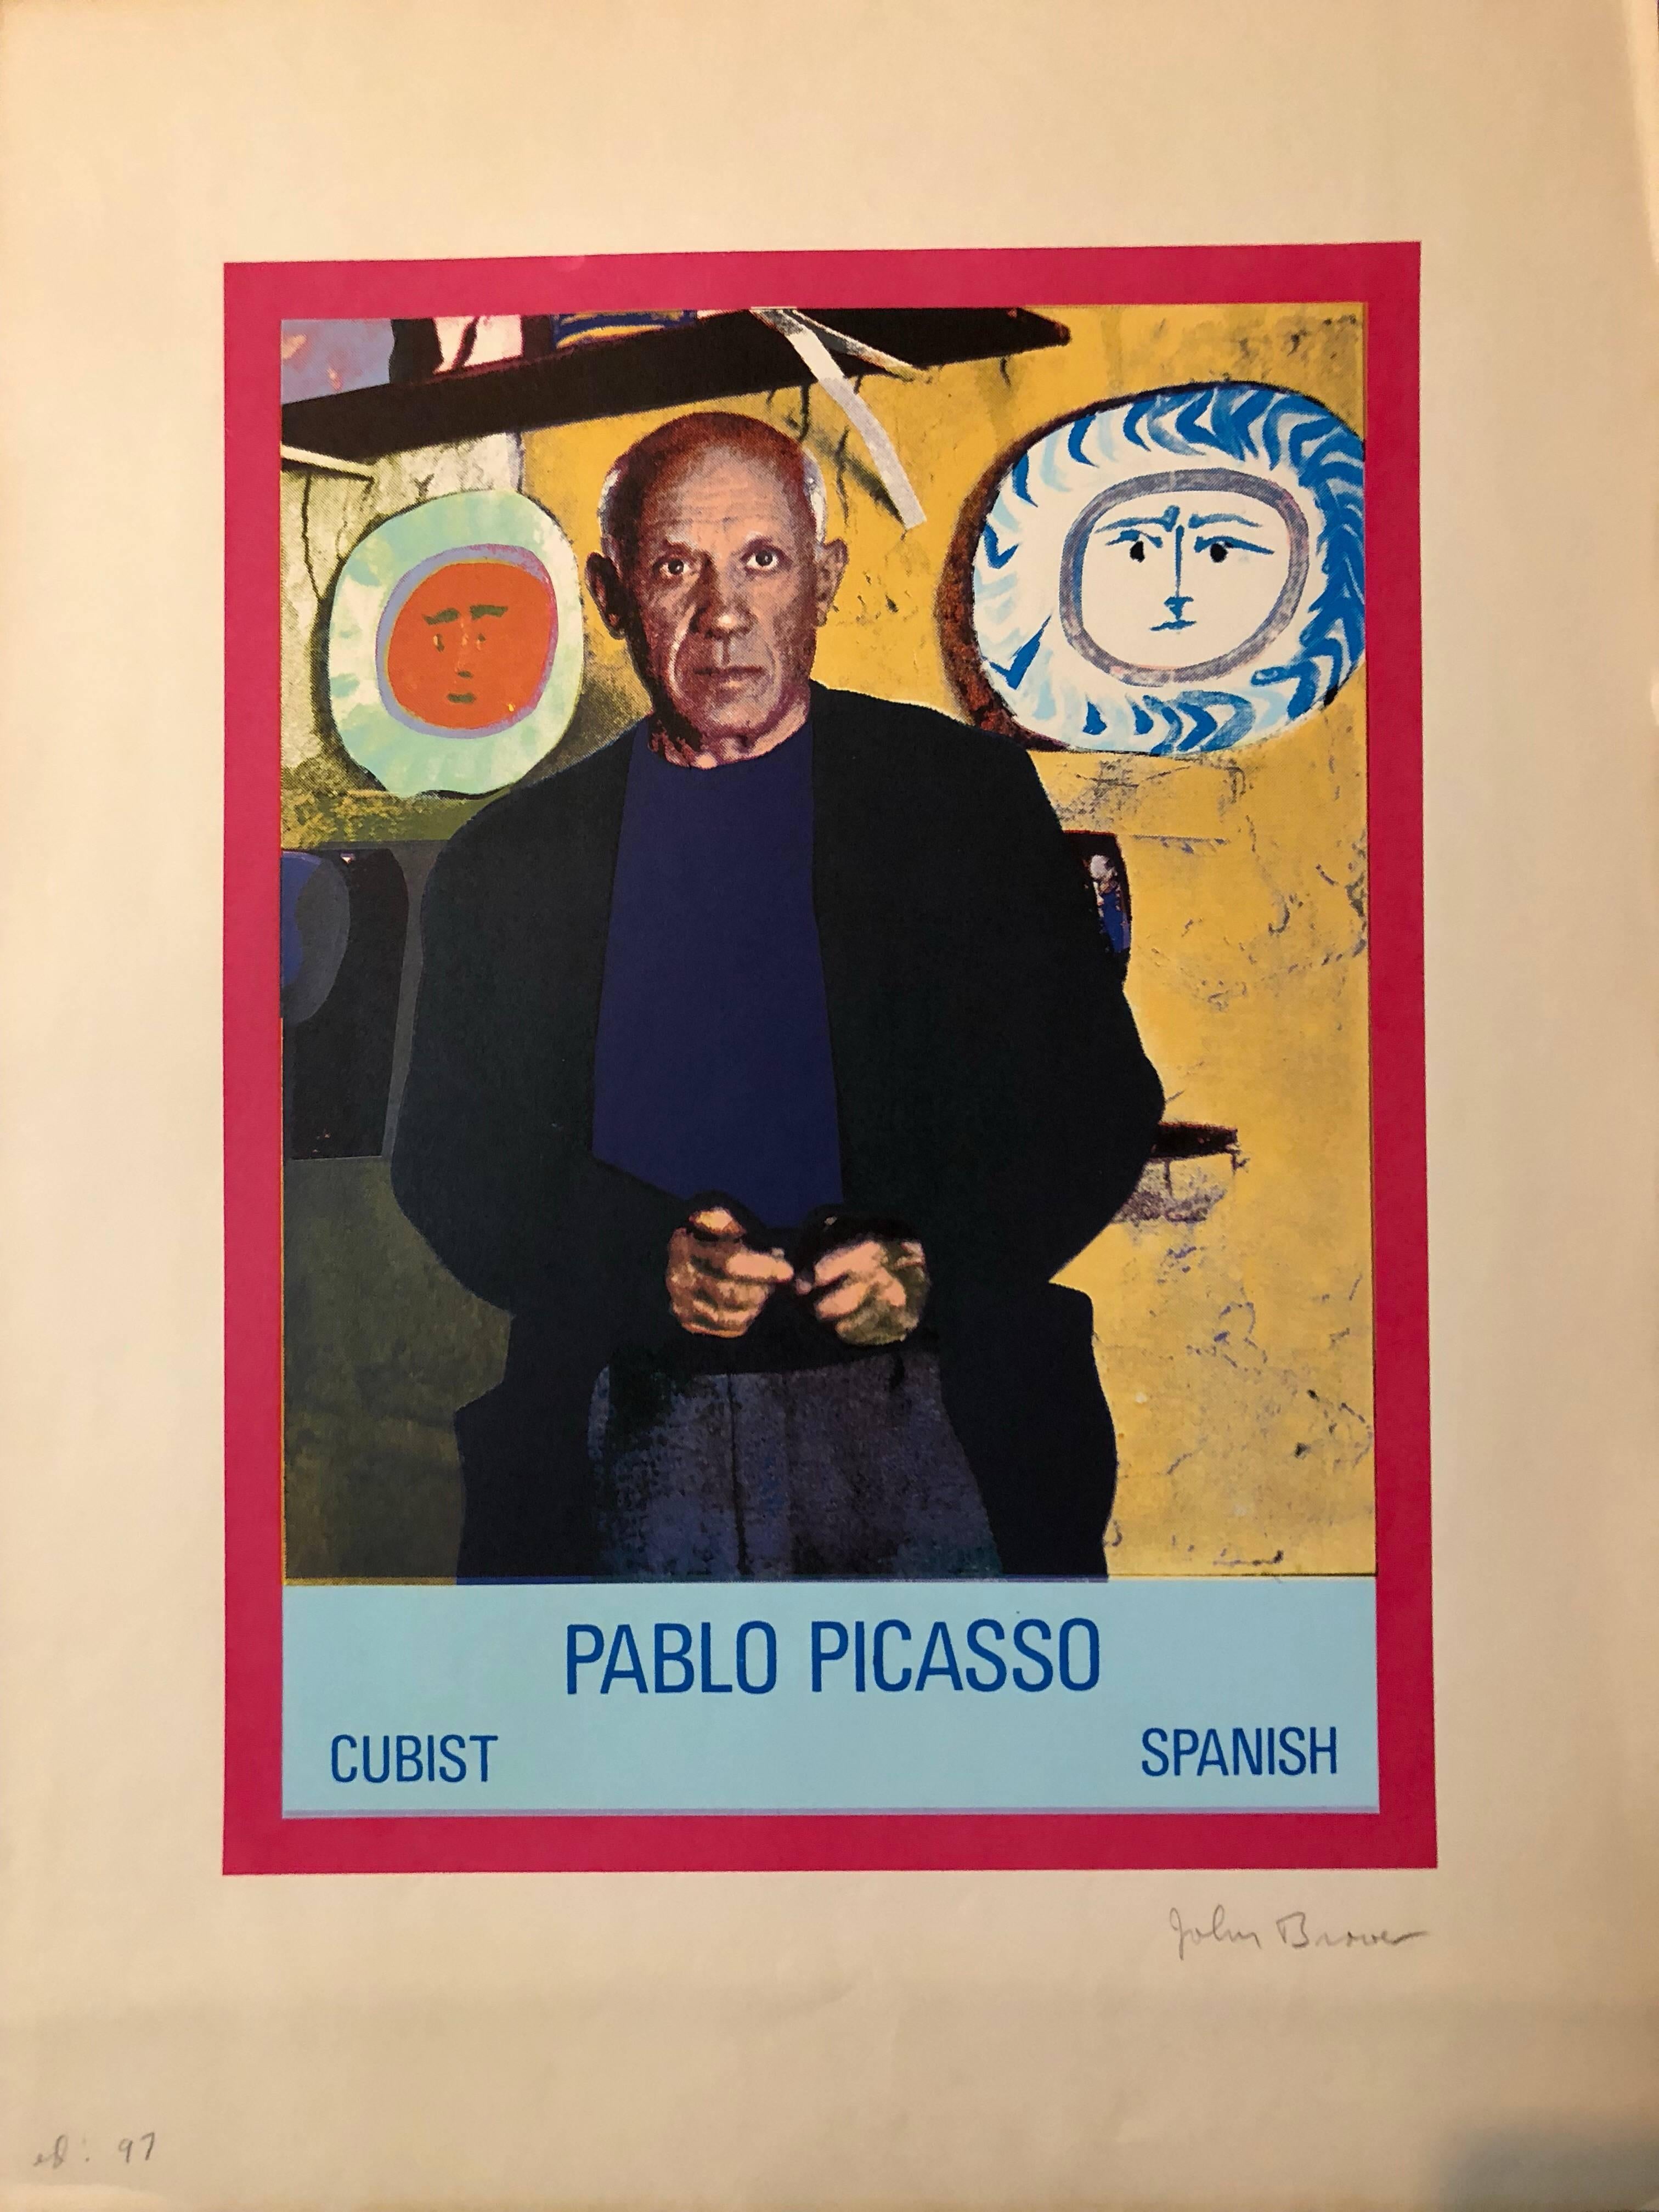 Dies ist für ein Foto Siebdruck Serigraphie ist es betitelt Pablo Picasso Kubist Spanisch. leichte Knitterung auf Papier außerhalb des Bildes

John Brower arbeitete 12 Jahre lang in Chicago als Plakatgestalter. Er lehrte Kunst am Alverno College in